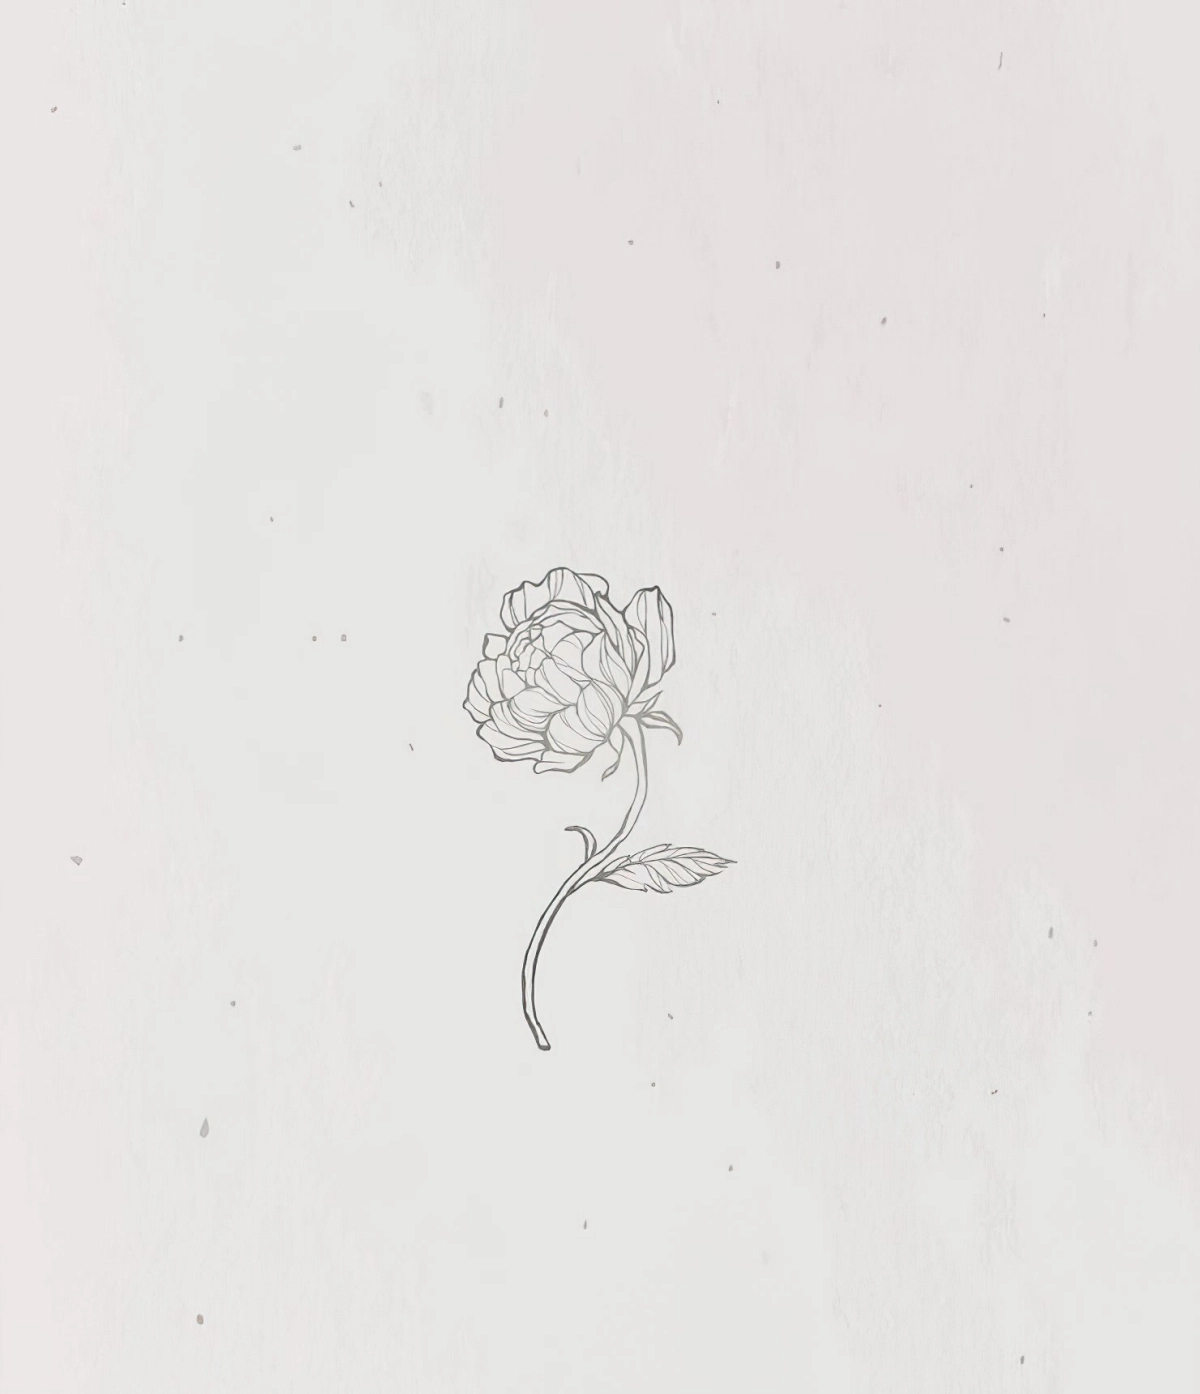 dessin aesthetic facile fleur realiste petales fond arriere plan gris clair